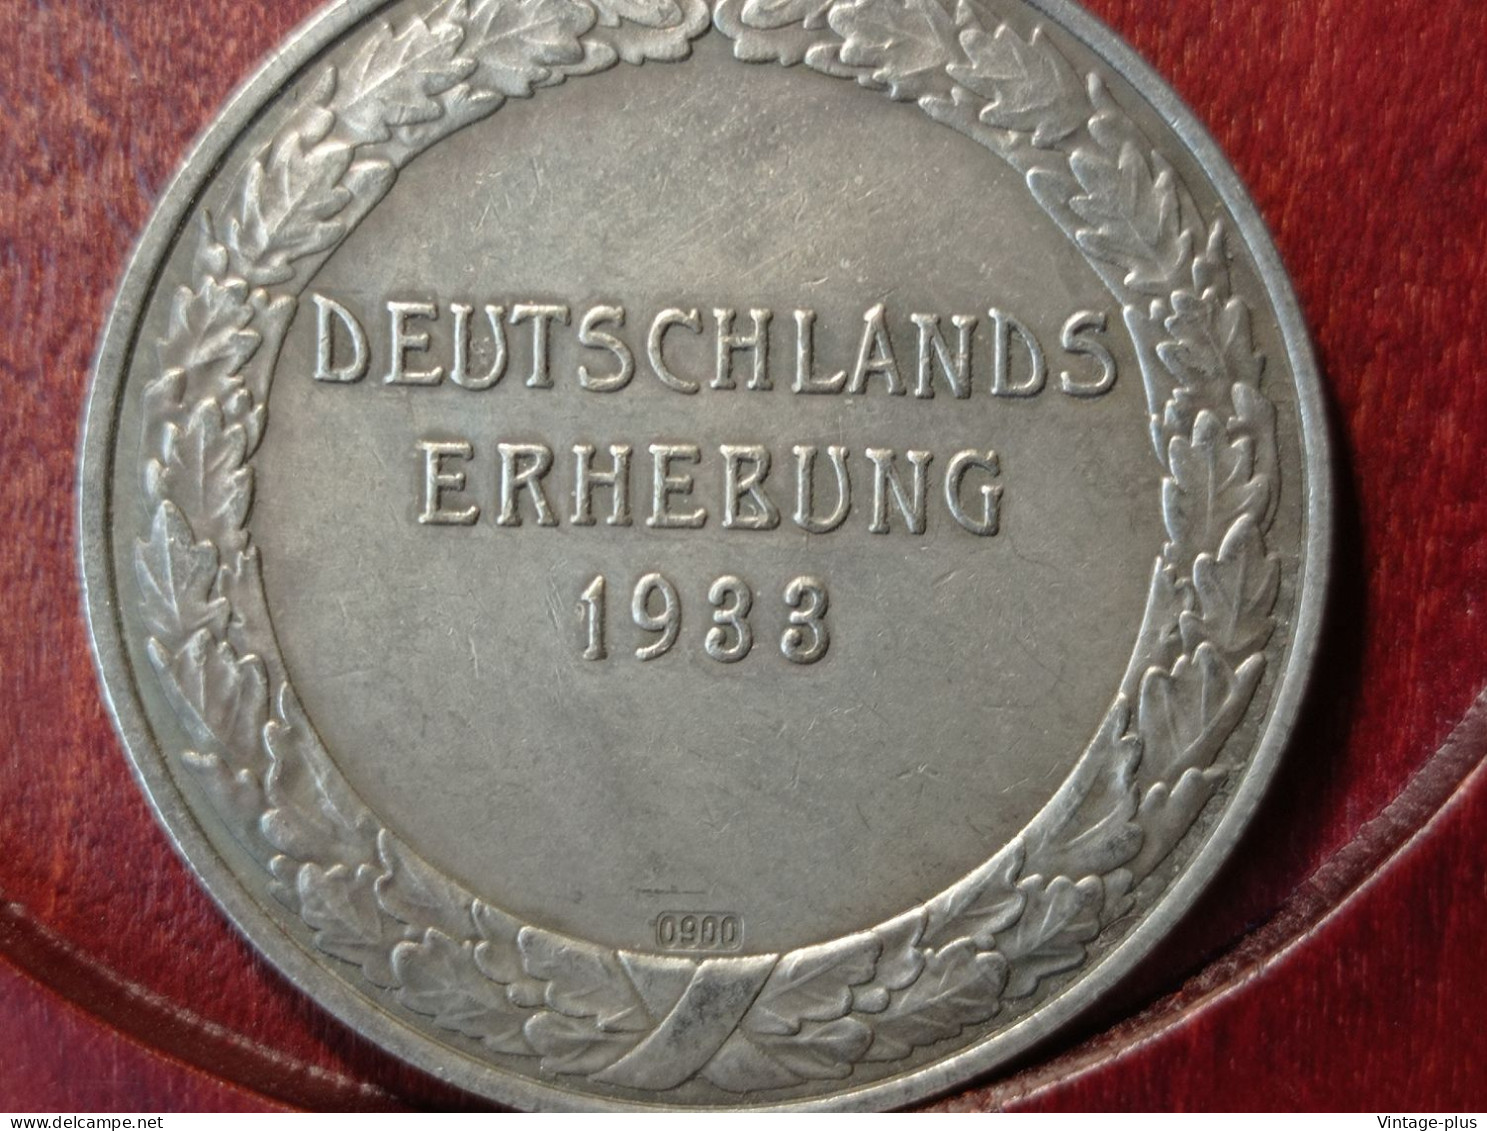 GERMANIA 3° REICH MONETA COMMEMORATIVA DEUTSCHLANDS ERHEBUNG1933 HITLER HINDENBURG  - ALLEMAGNE - DEUTSCHLAND - COD:AB8 - Altri – Europa